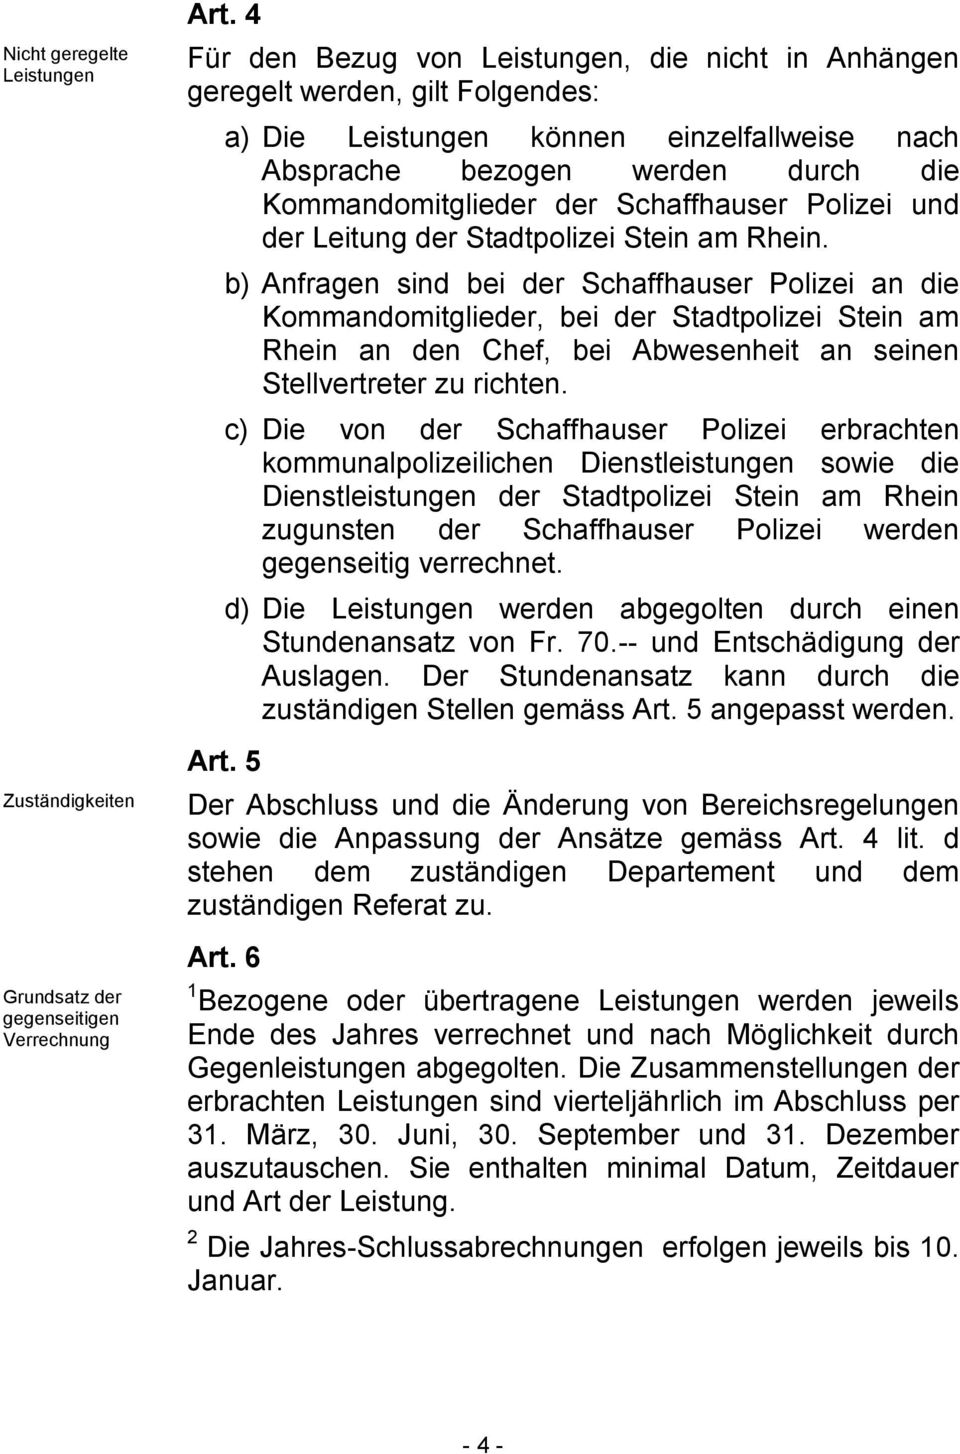 b) Anfragen sind bei der Schaffhauser Polizei an die Kommandomitglieder, bei der Stadtpolizei Stein am Rhein an den Chef, bei Abwesenheit an seinen Stellvertreter zu richten.